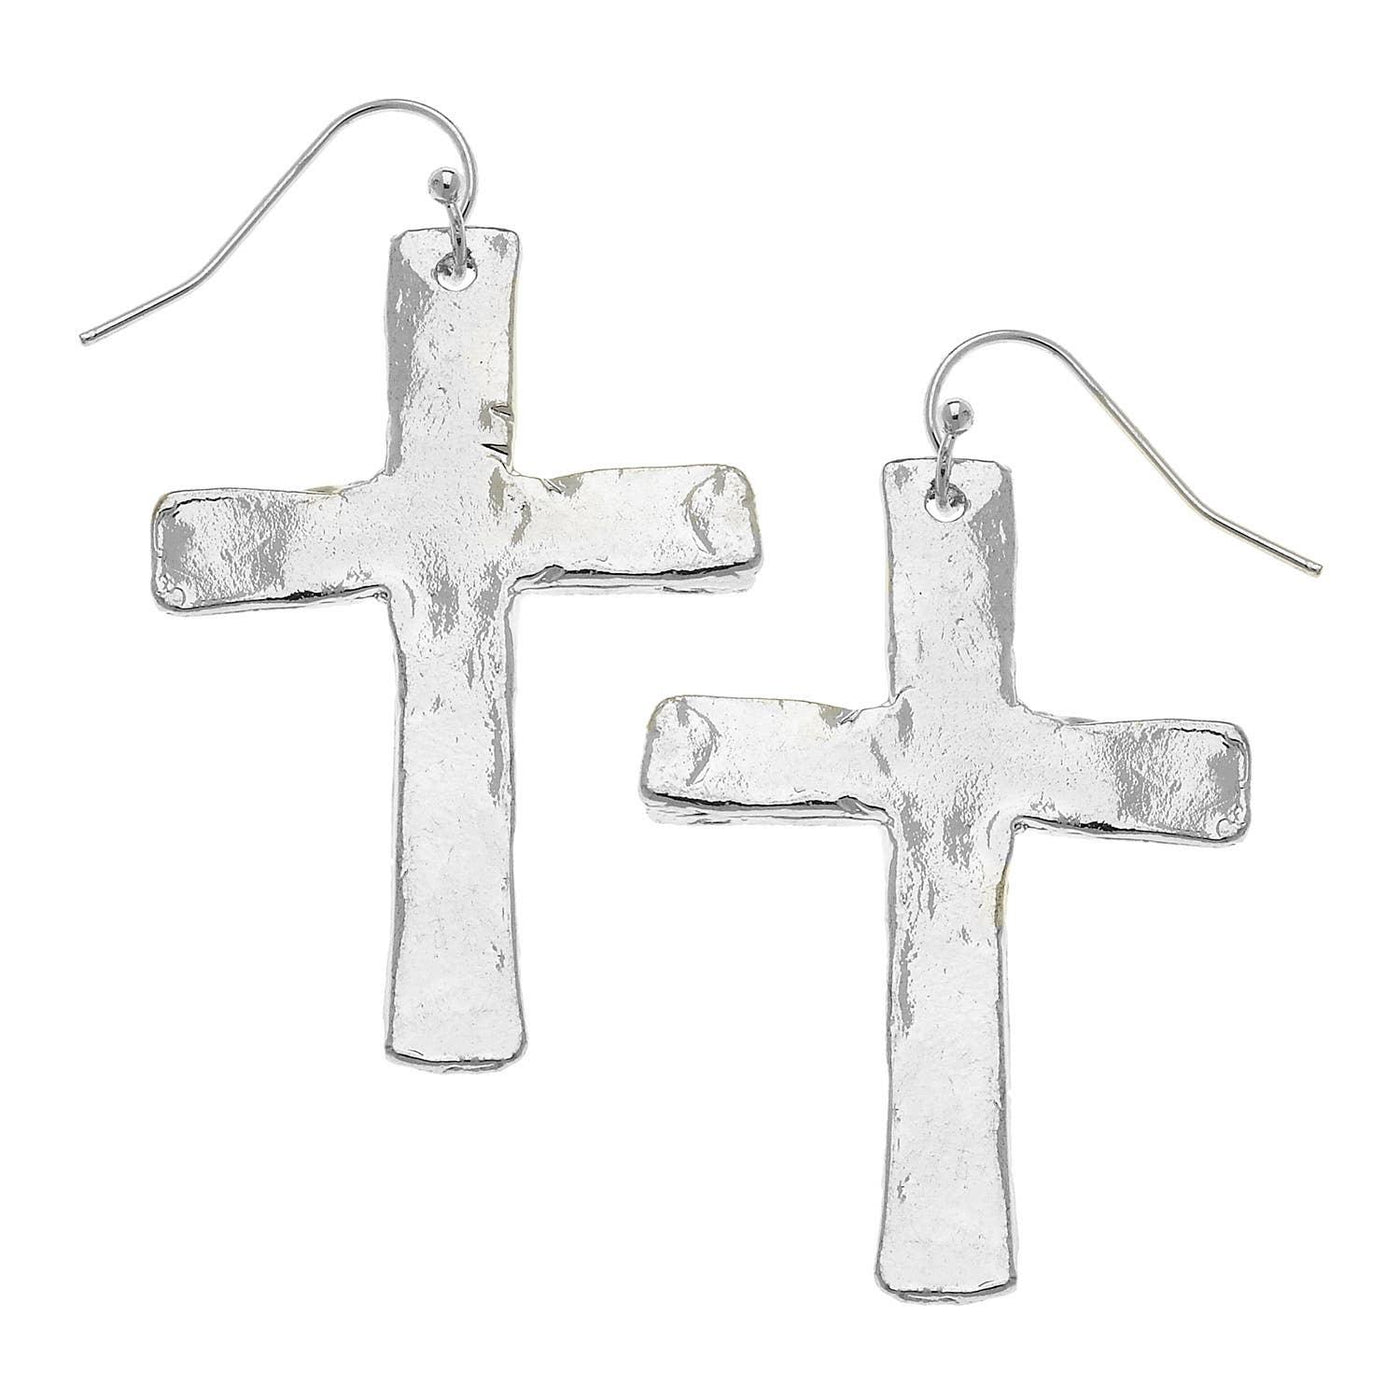 Worn silver cross earrings with a fishhook backing